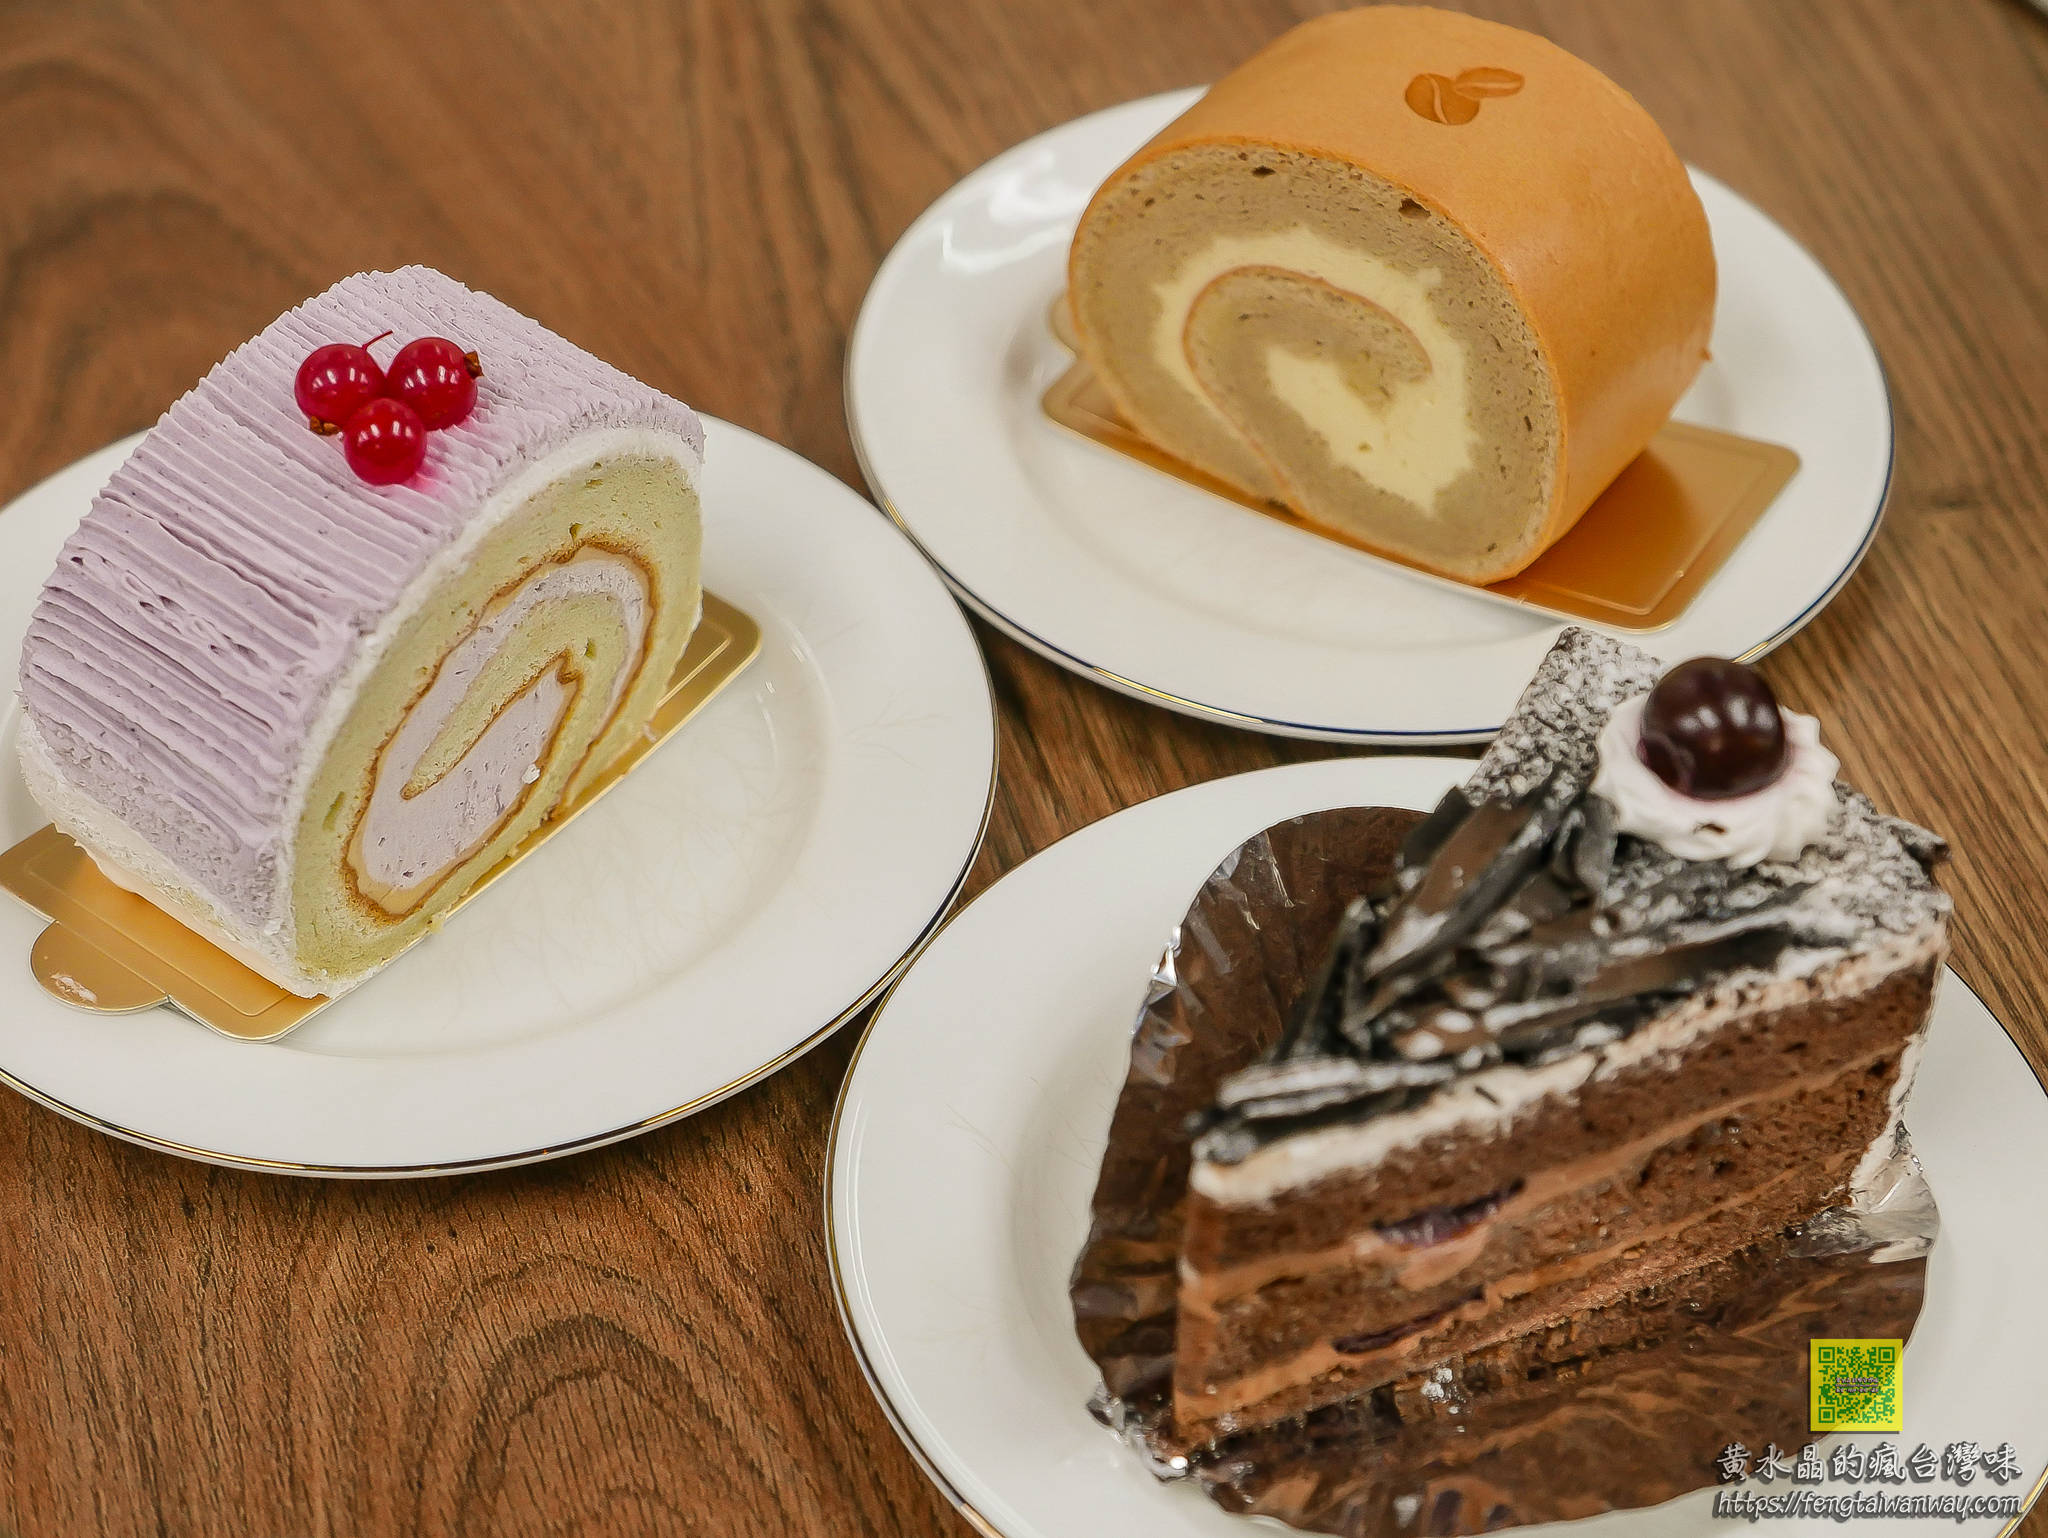 舞動人咖啡蛋糕坊【台北咖啡】|大稻埕永樂市場隱藏版咖啡蛋糕甜點推薦